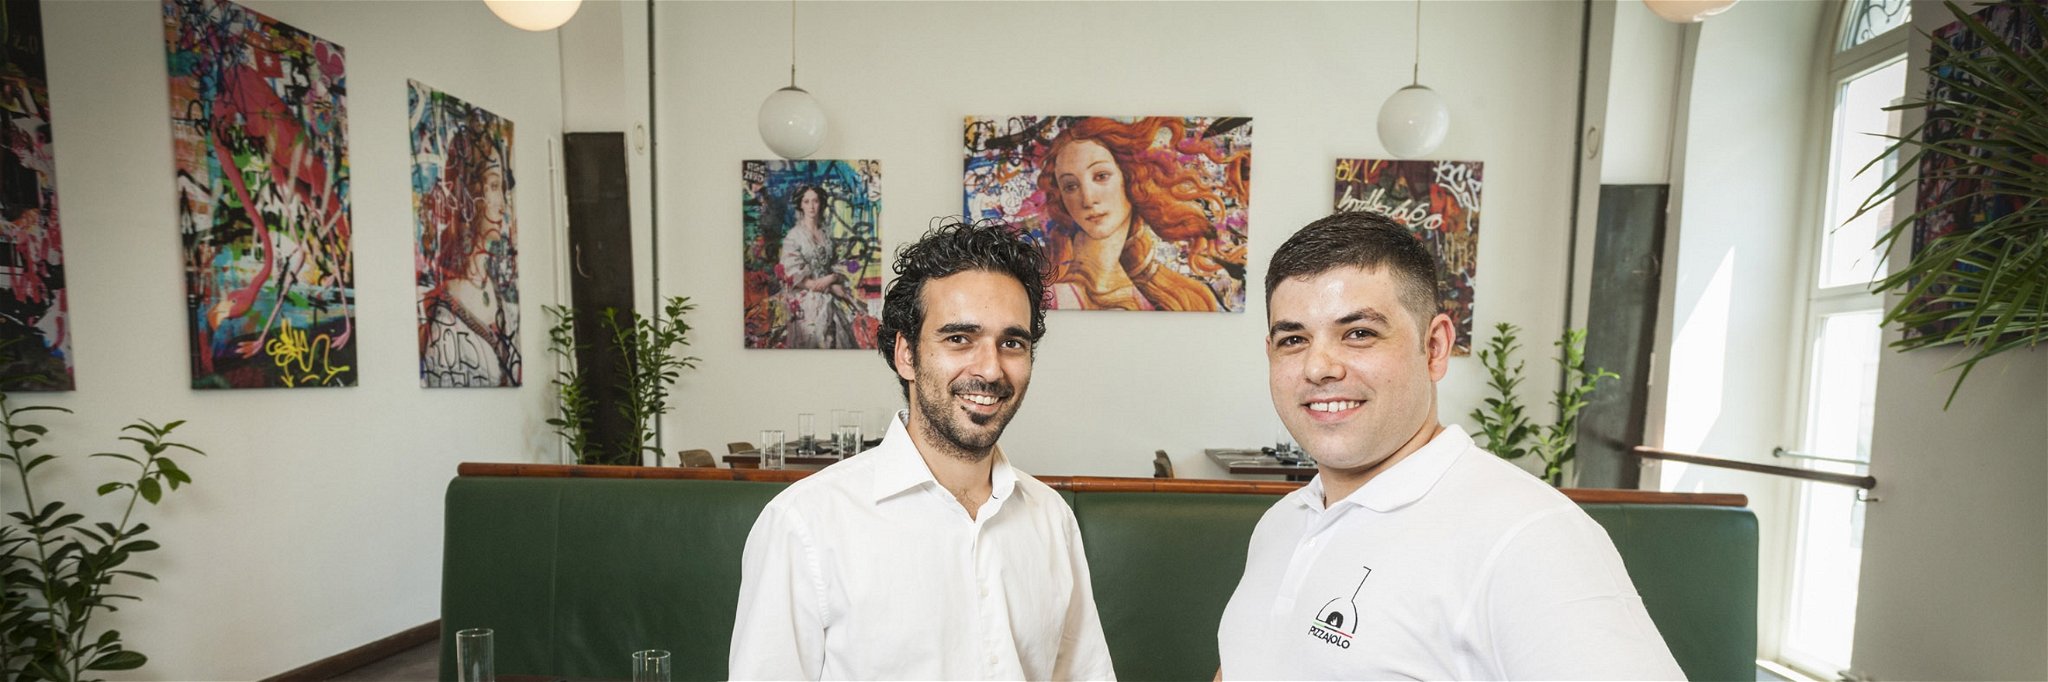 Raimondo Trombatore und Eros Pusceddu servieren ab sofort neapolitanische Pizzen in Graz.